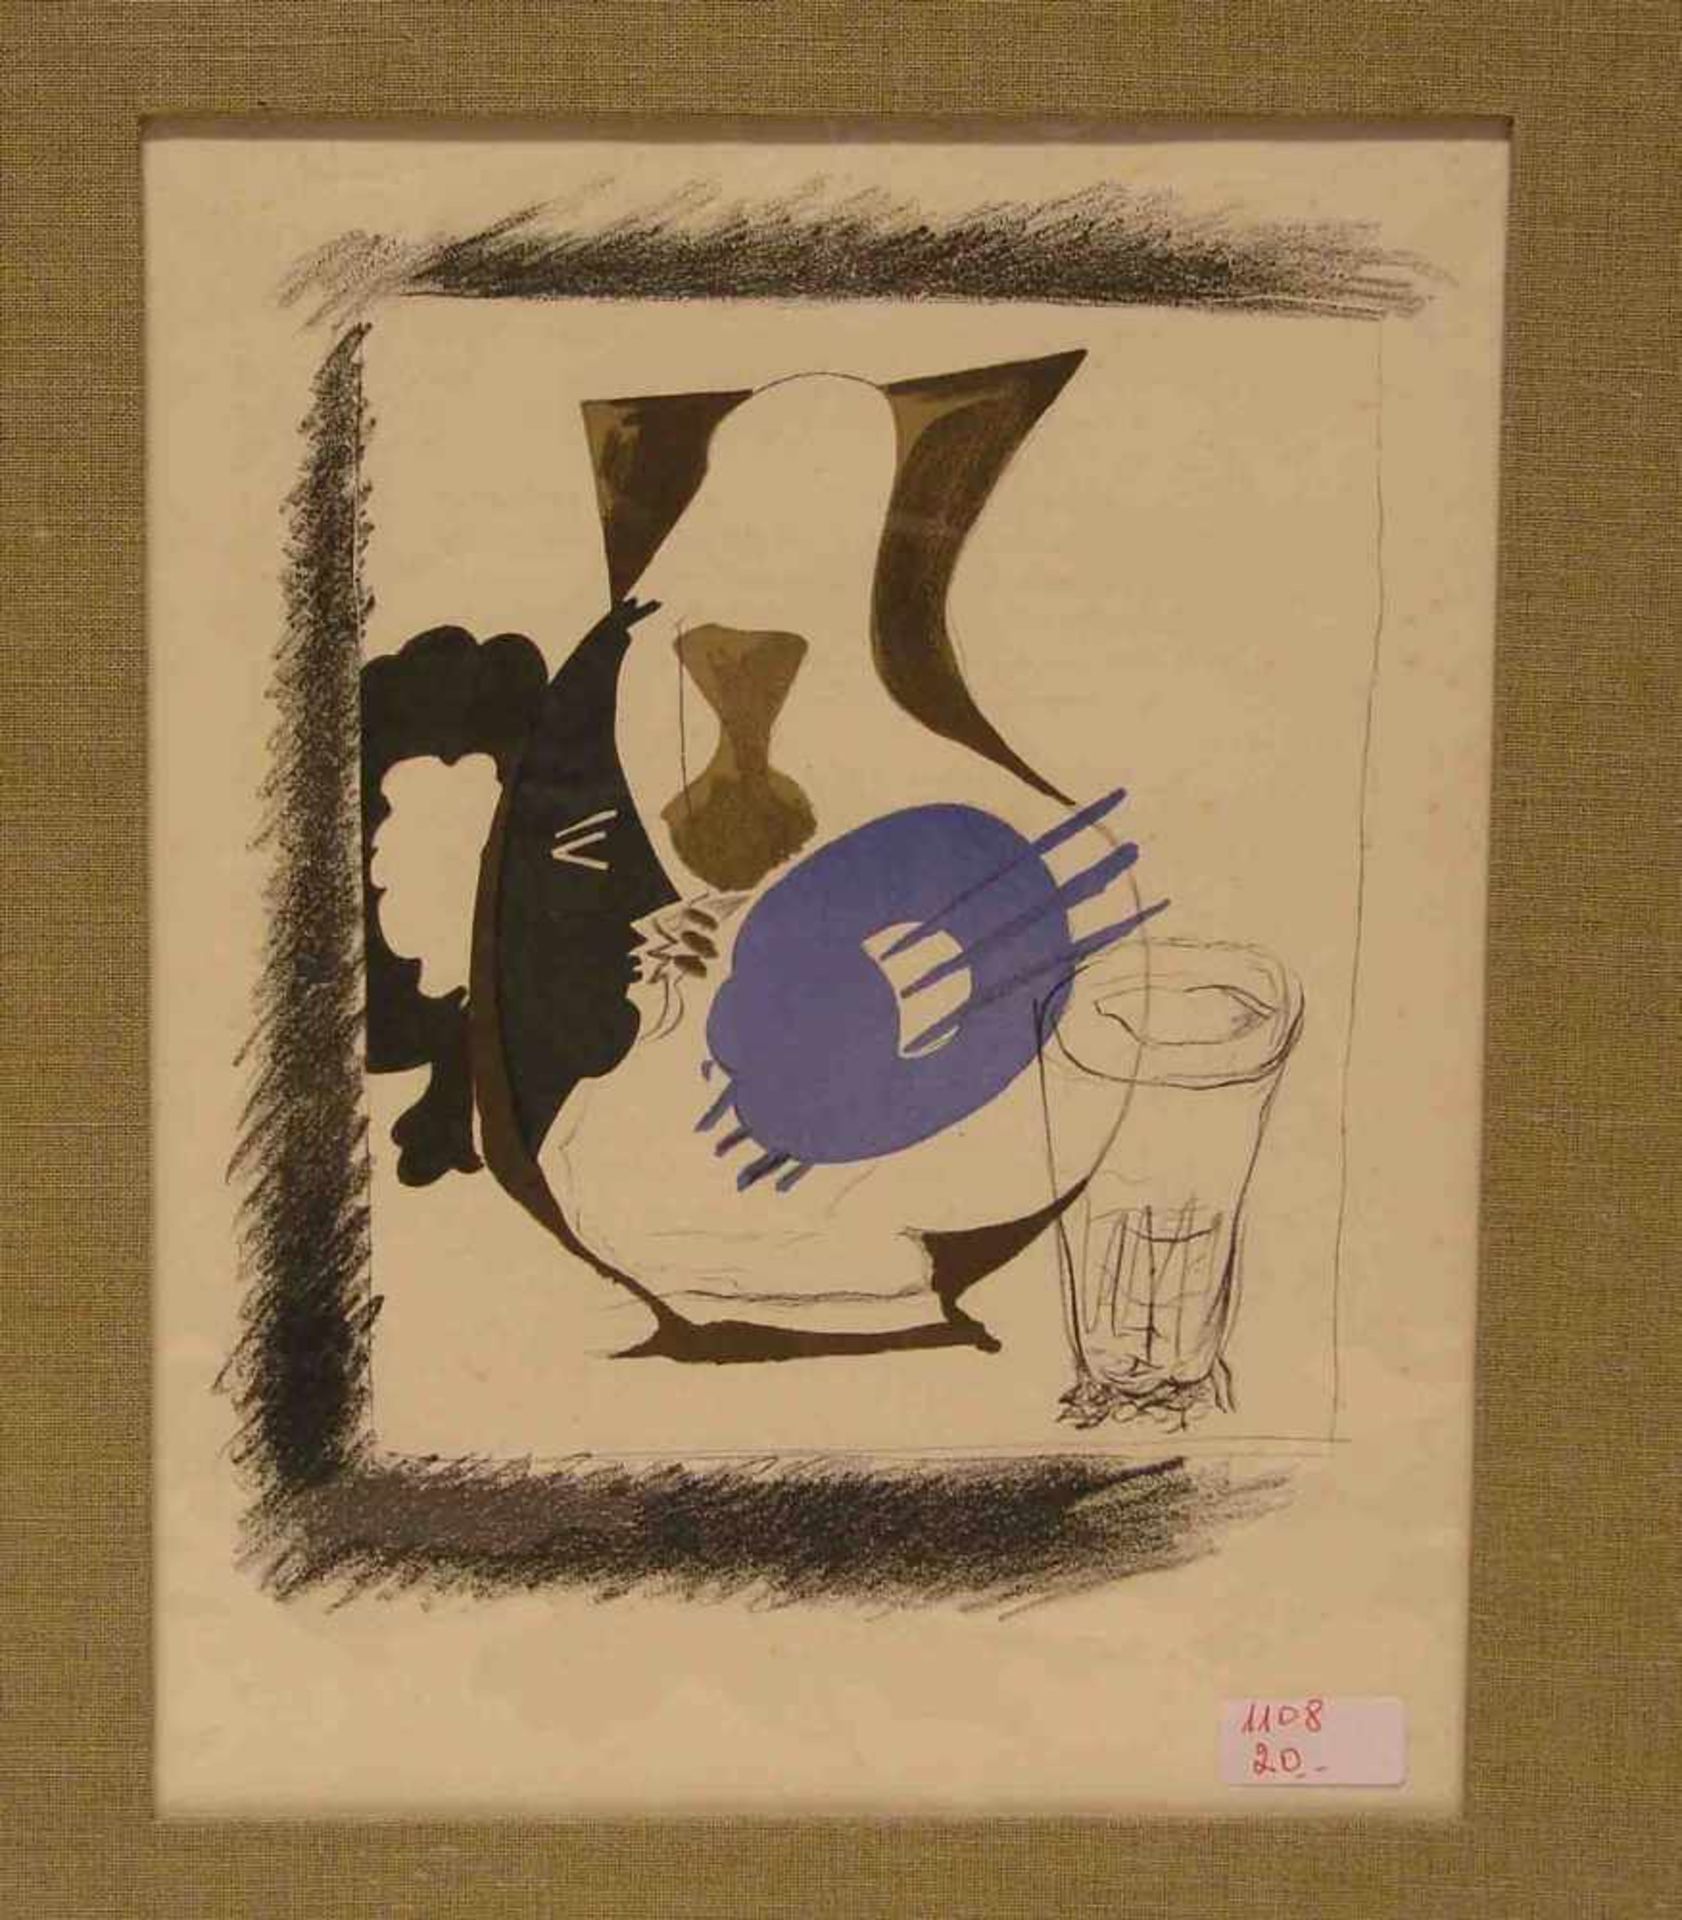 Braque, George ( Argenteuil 1882 - 1963 Paris) : "Moderne Komposition". Farblithographie,32 x